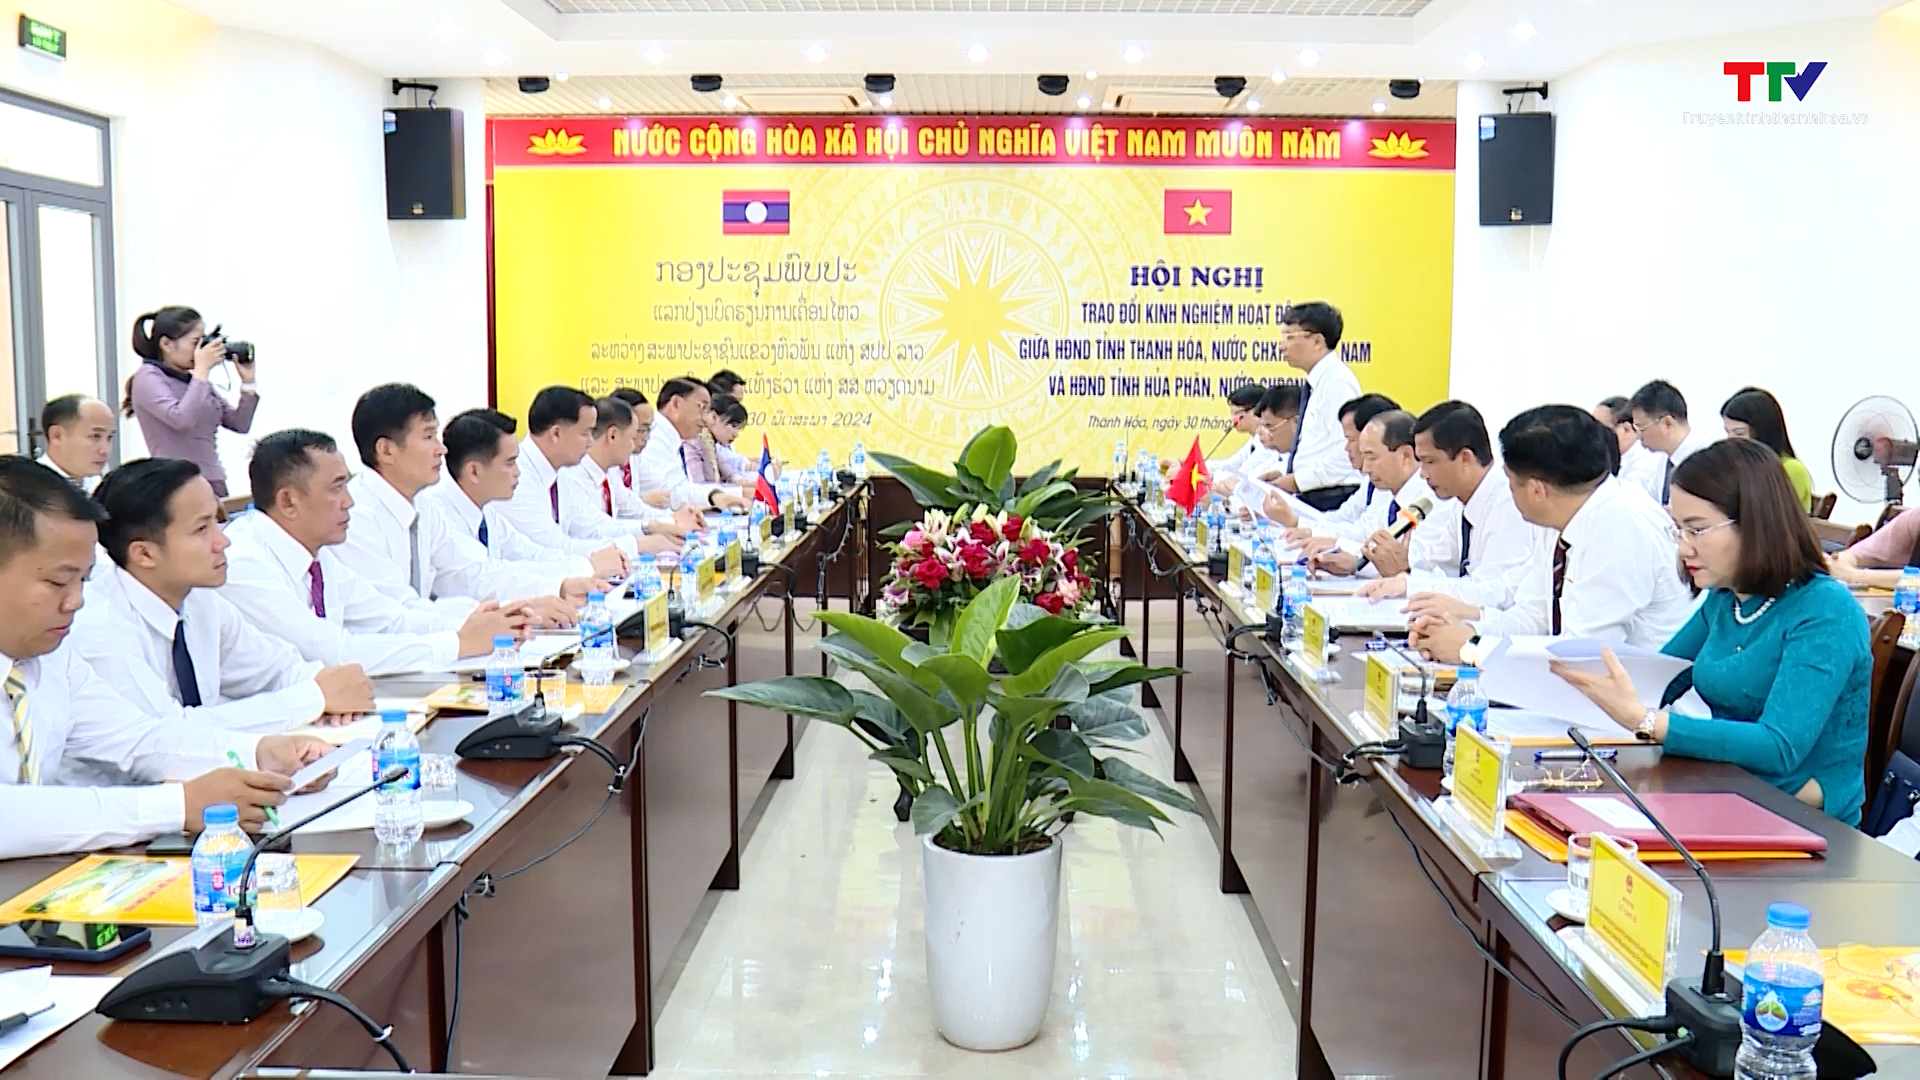 Trao đổi kinh nghiệm hoạt động giữa Hội đồng Nhân dân hai tỉnh Thanh Hoá - Hủa Phăn (Lào)- Ảnh 3.